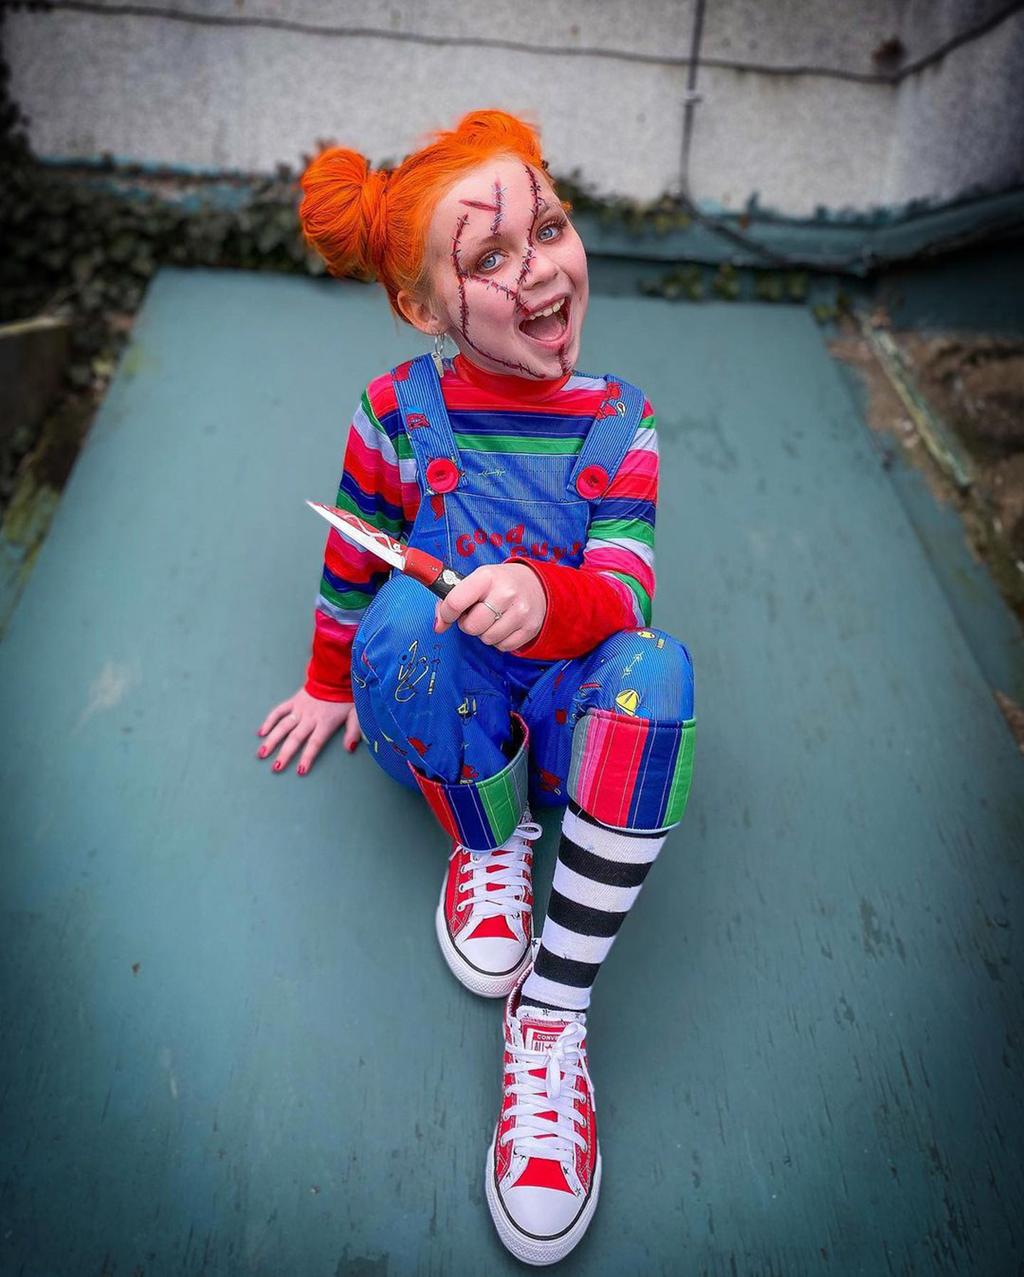 À seulement 8 ans, elle recrée des scènes de films d’horreur sur son compte Instagram